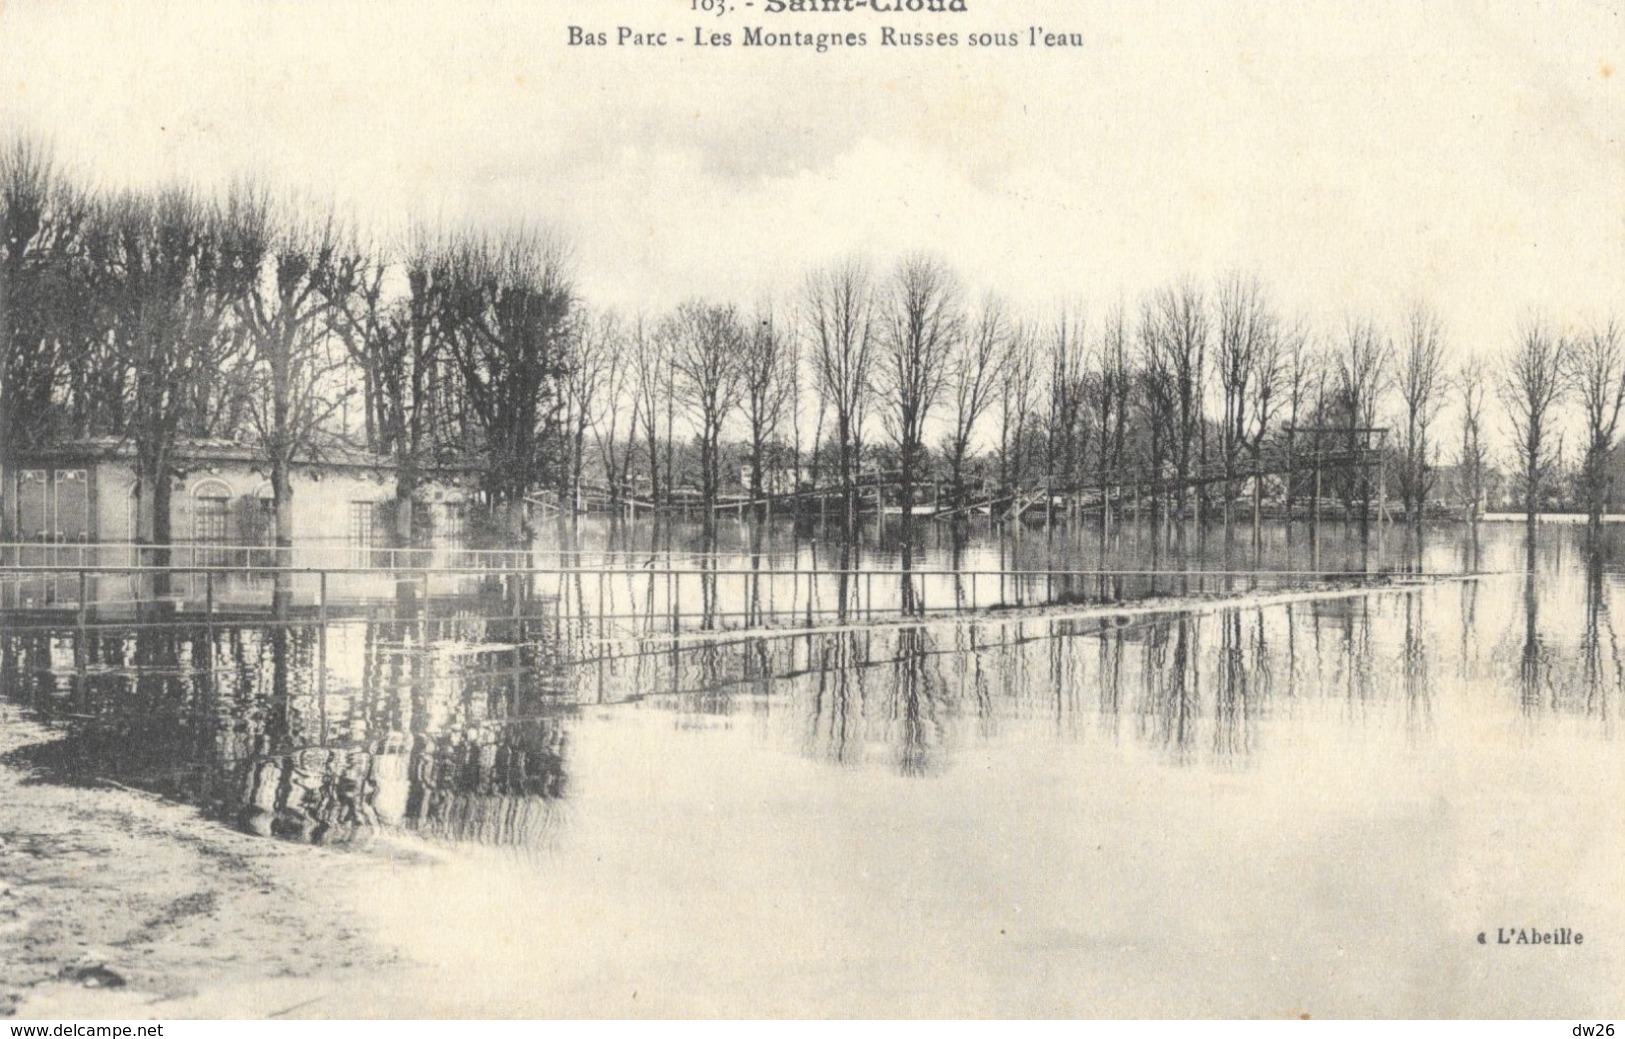 Crues De La Seine 1910 - Saint-Cloud - Bas Parc - Les Montagnes Russes Sous L'eau - Carte L'Abeille N° 103 Non Circulée - Floods